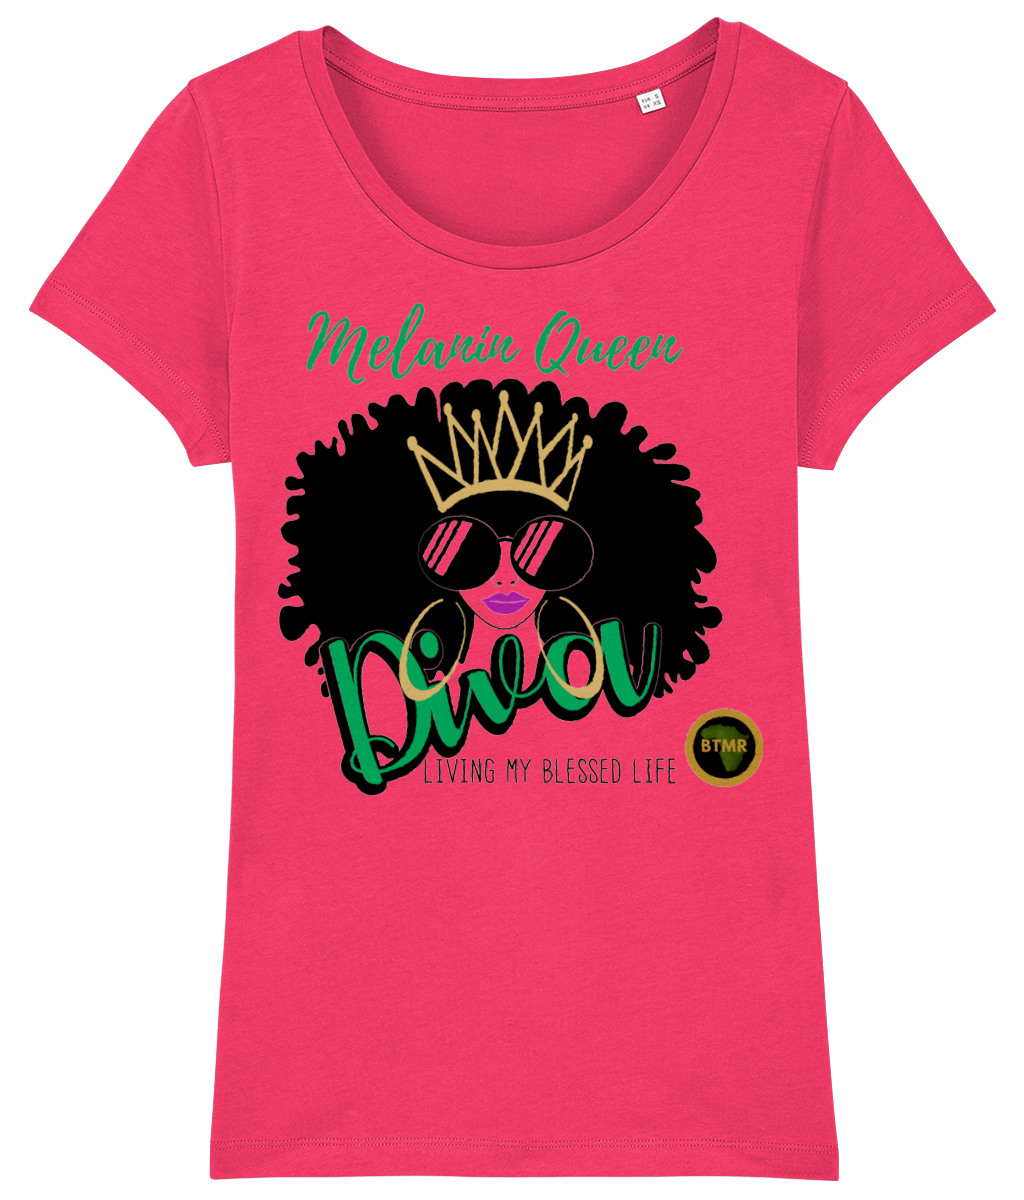 Scoop Neck Fitted T Shirt | Women | Melanin Queen Diva